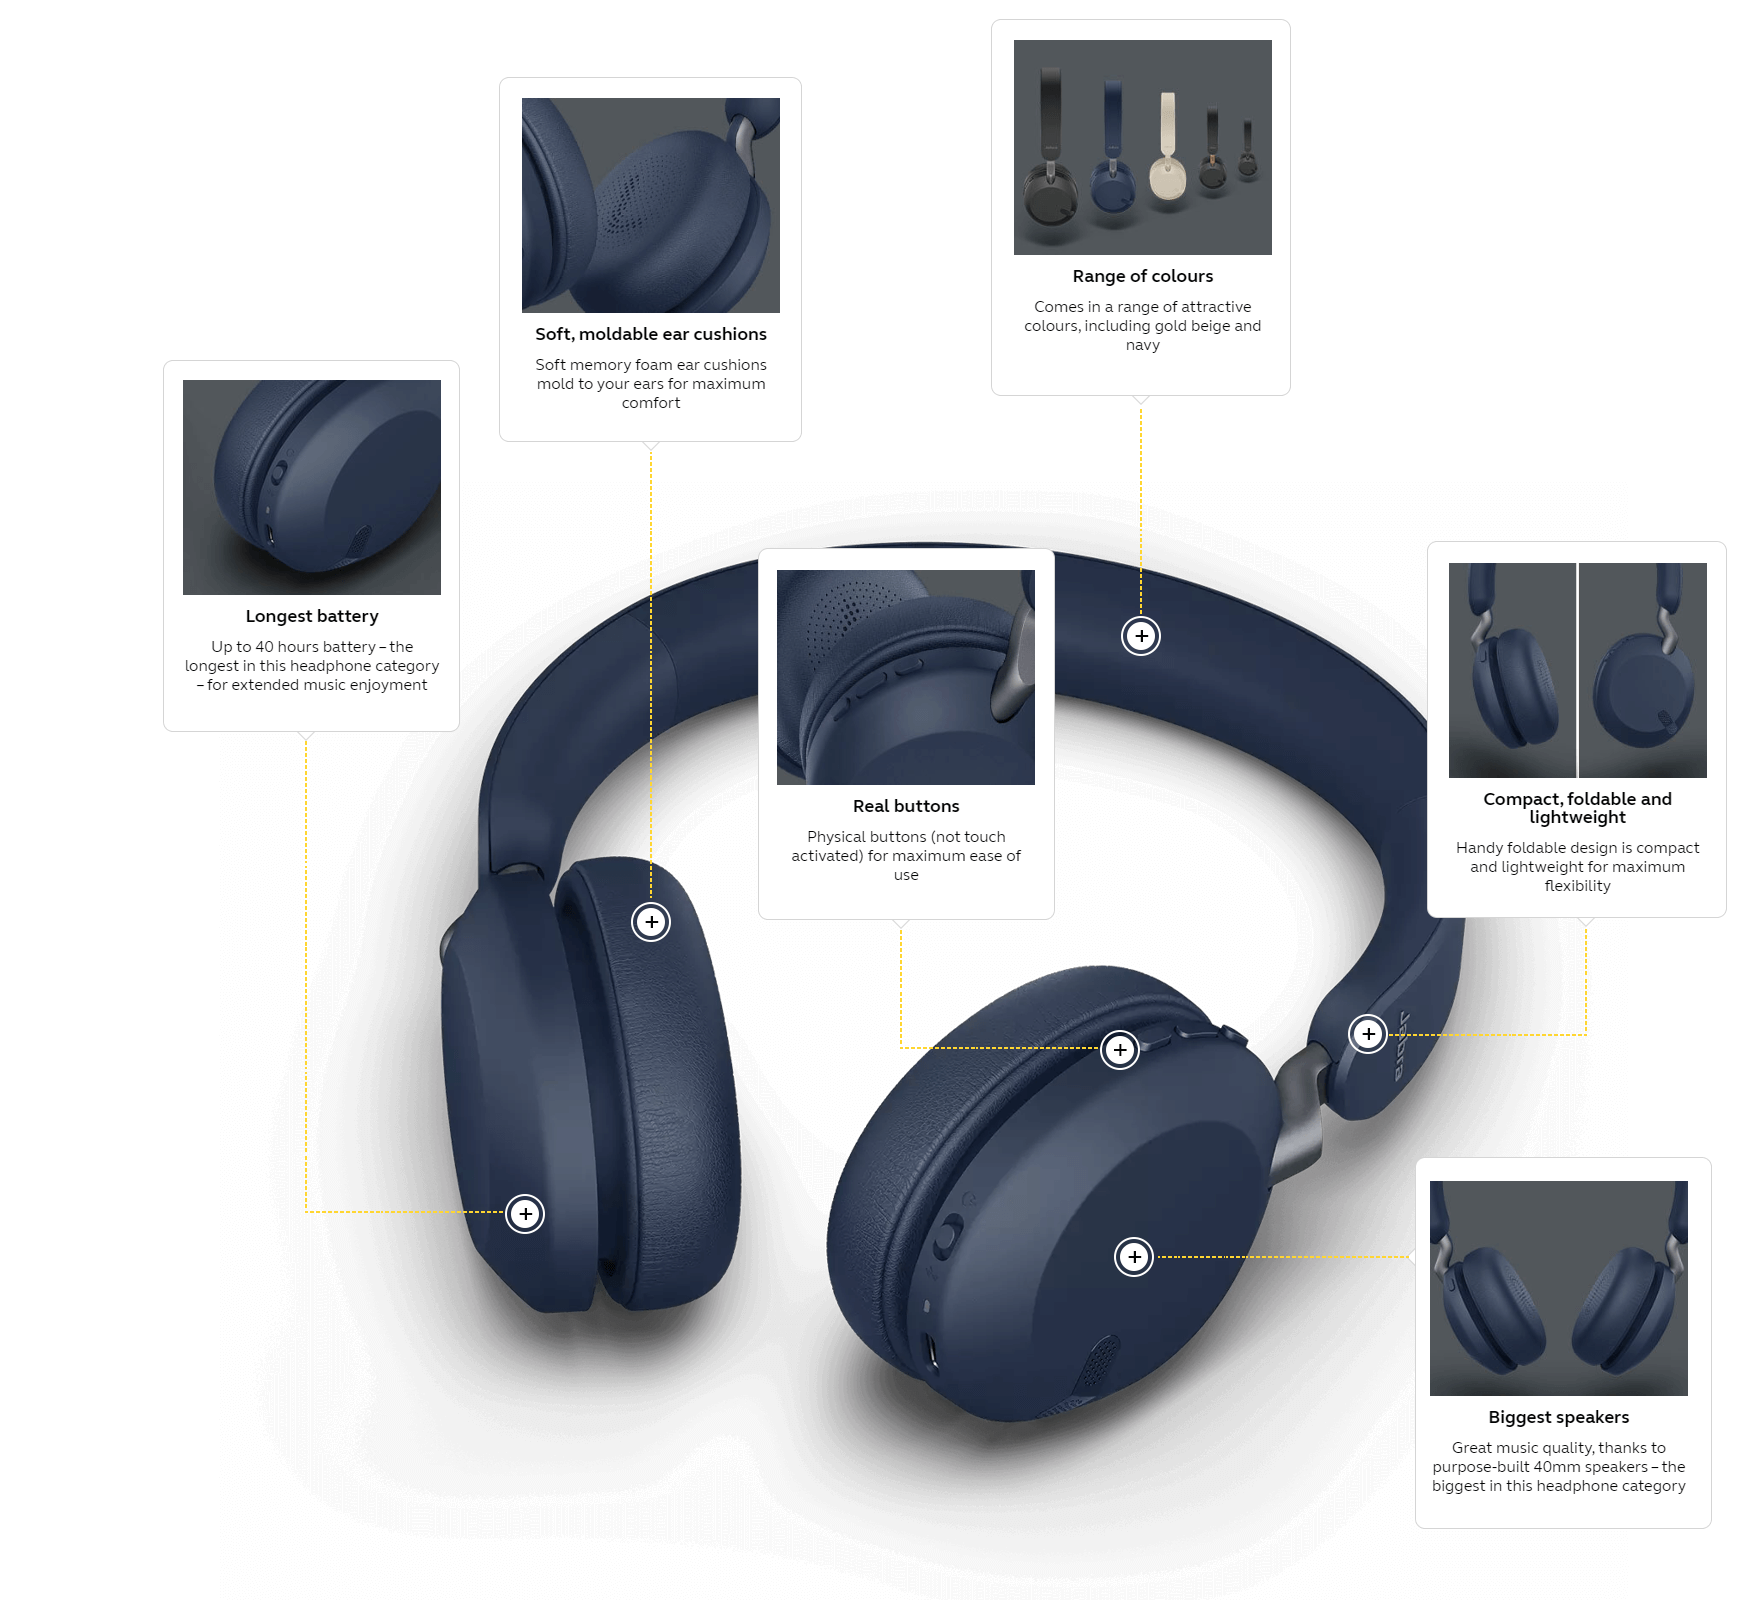 headphones showing up as speakers